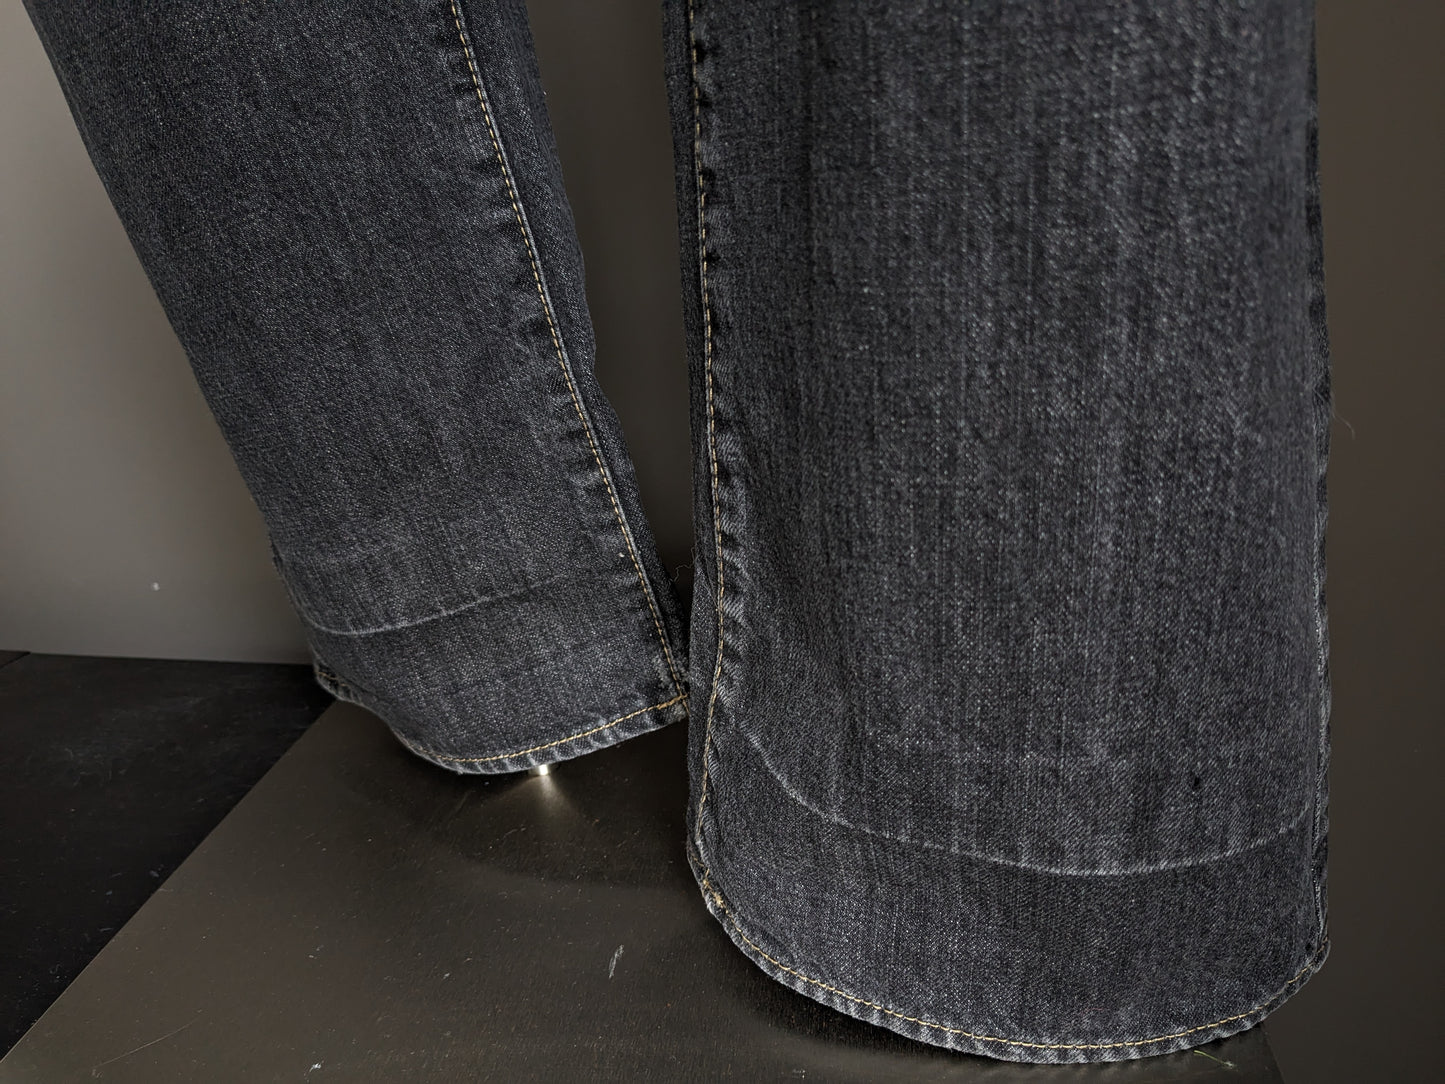 Boss Hugo Boss Jeans. Colorato nero. Taglia W38 - L34.